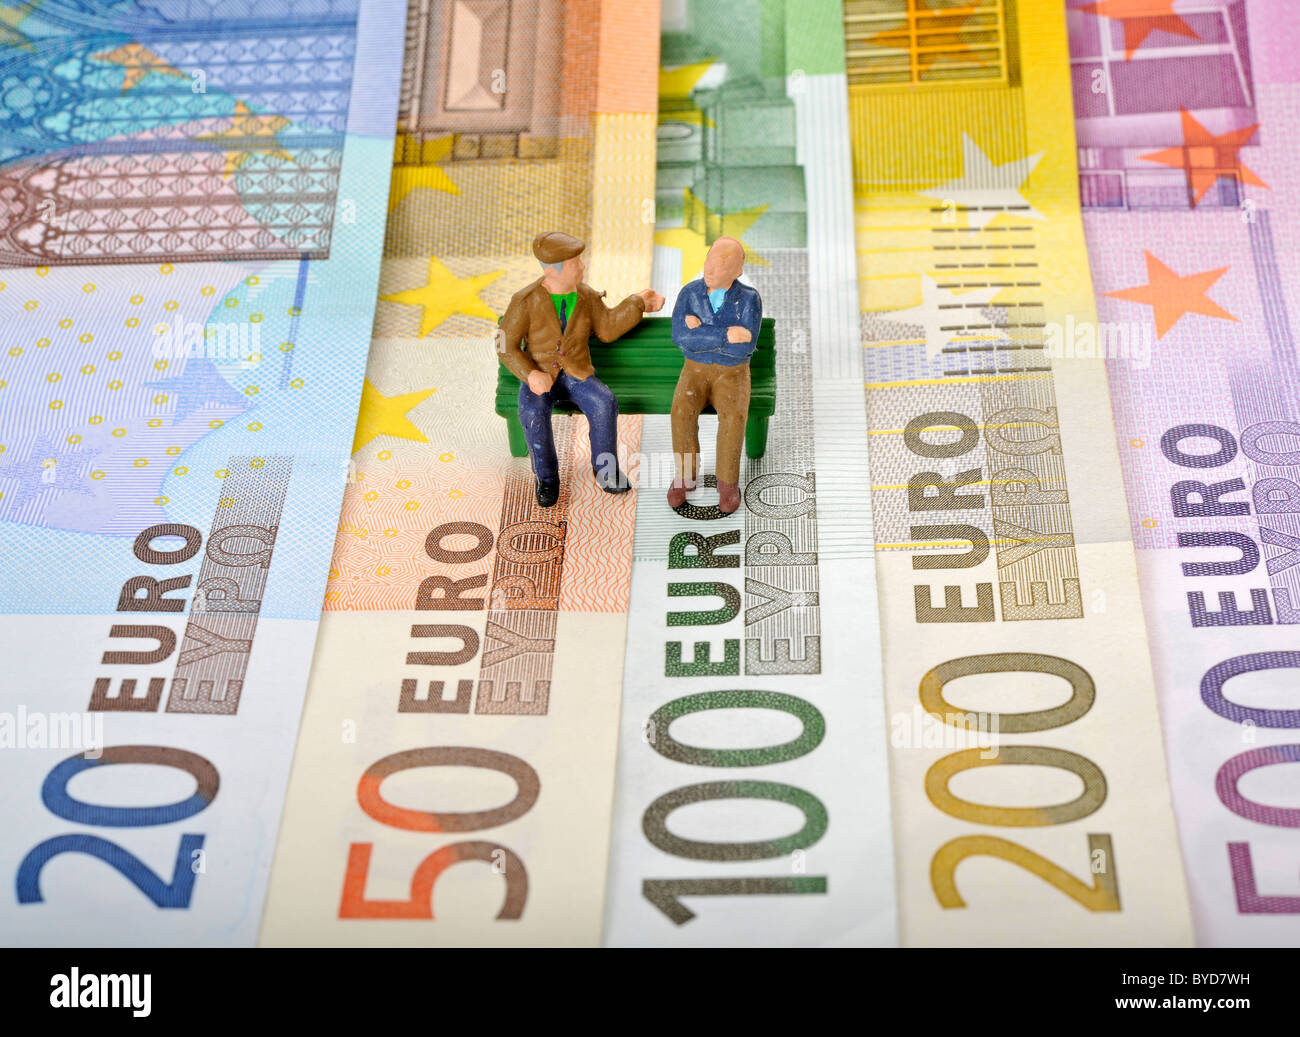 Varie banconote in euro, i cittadini anziani seduti su una panchina nel parco, immagine simbolica per il pensionamento disposizioni, rendita di vecchiaia Foto Stock